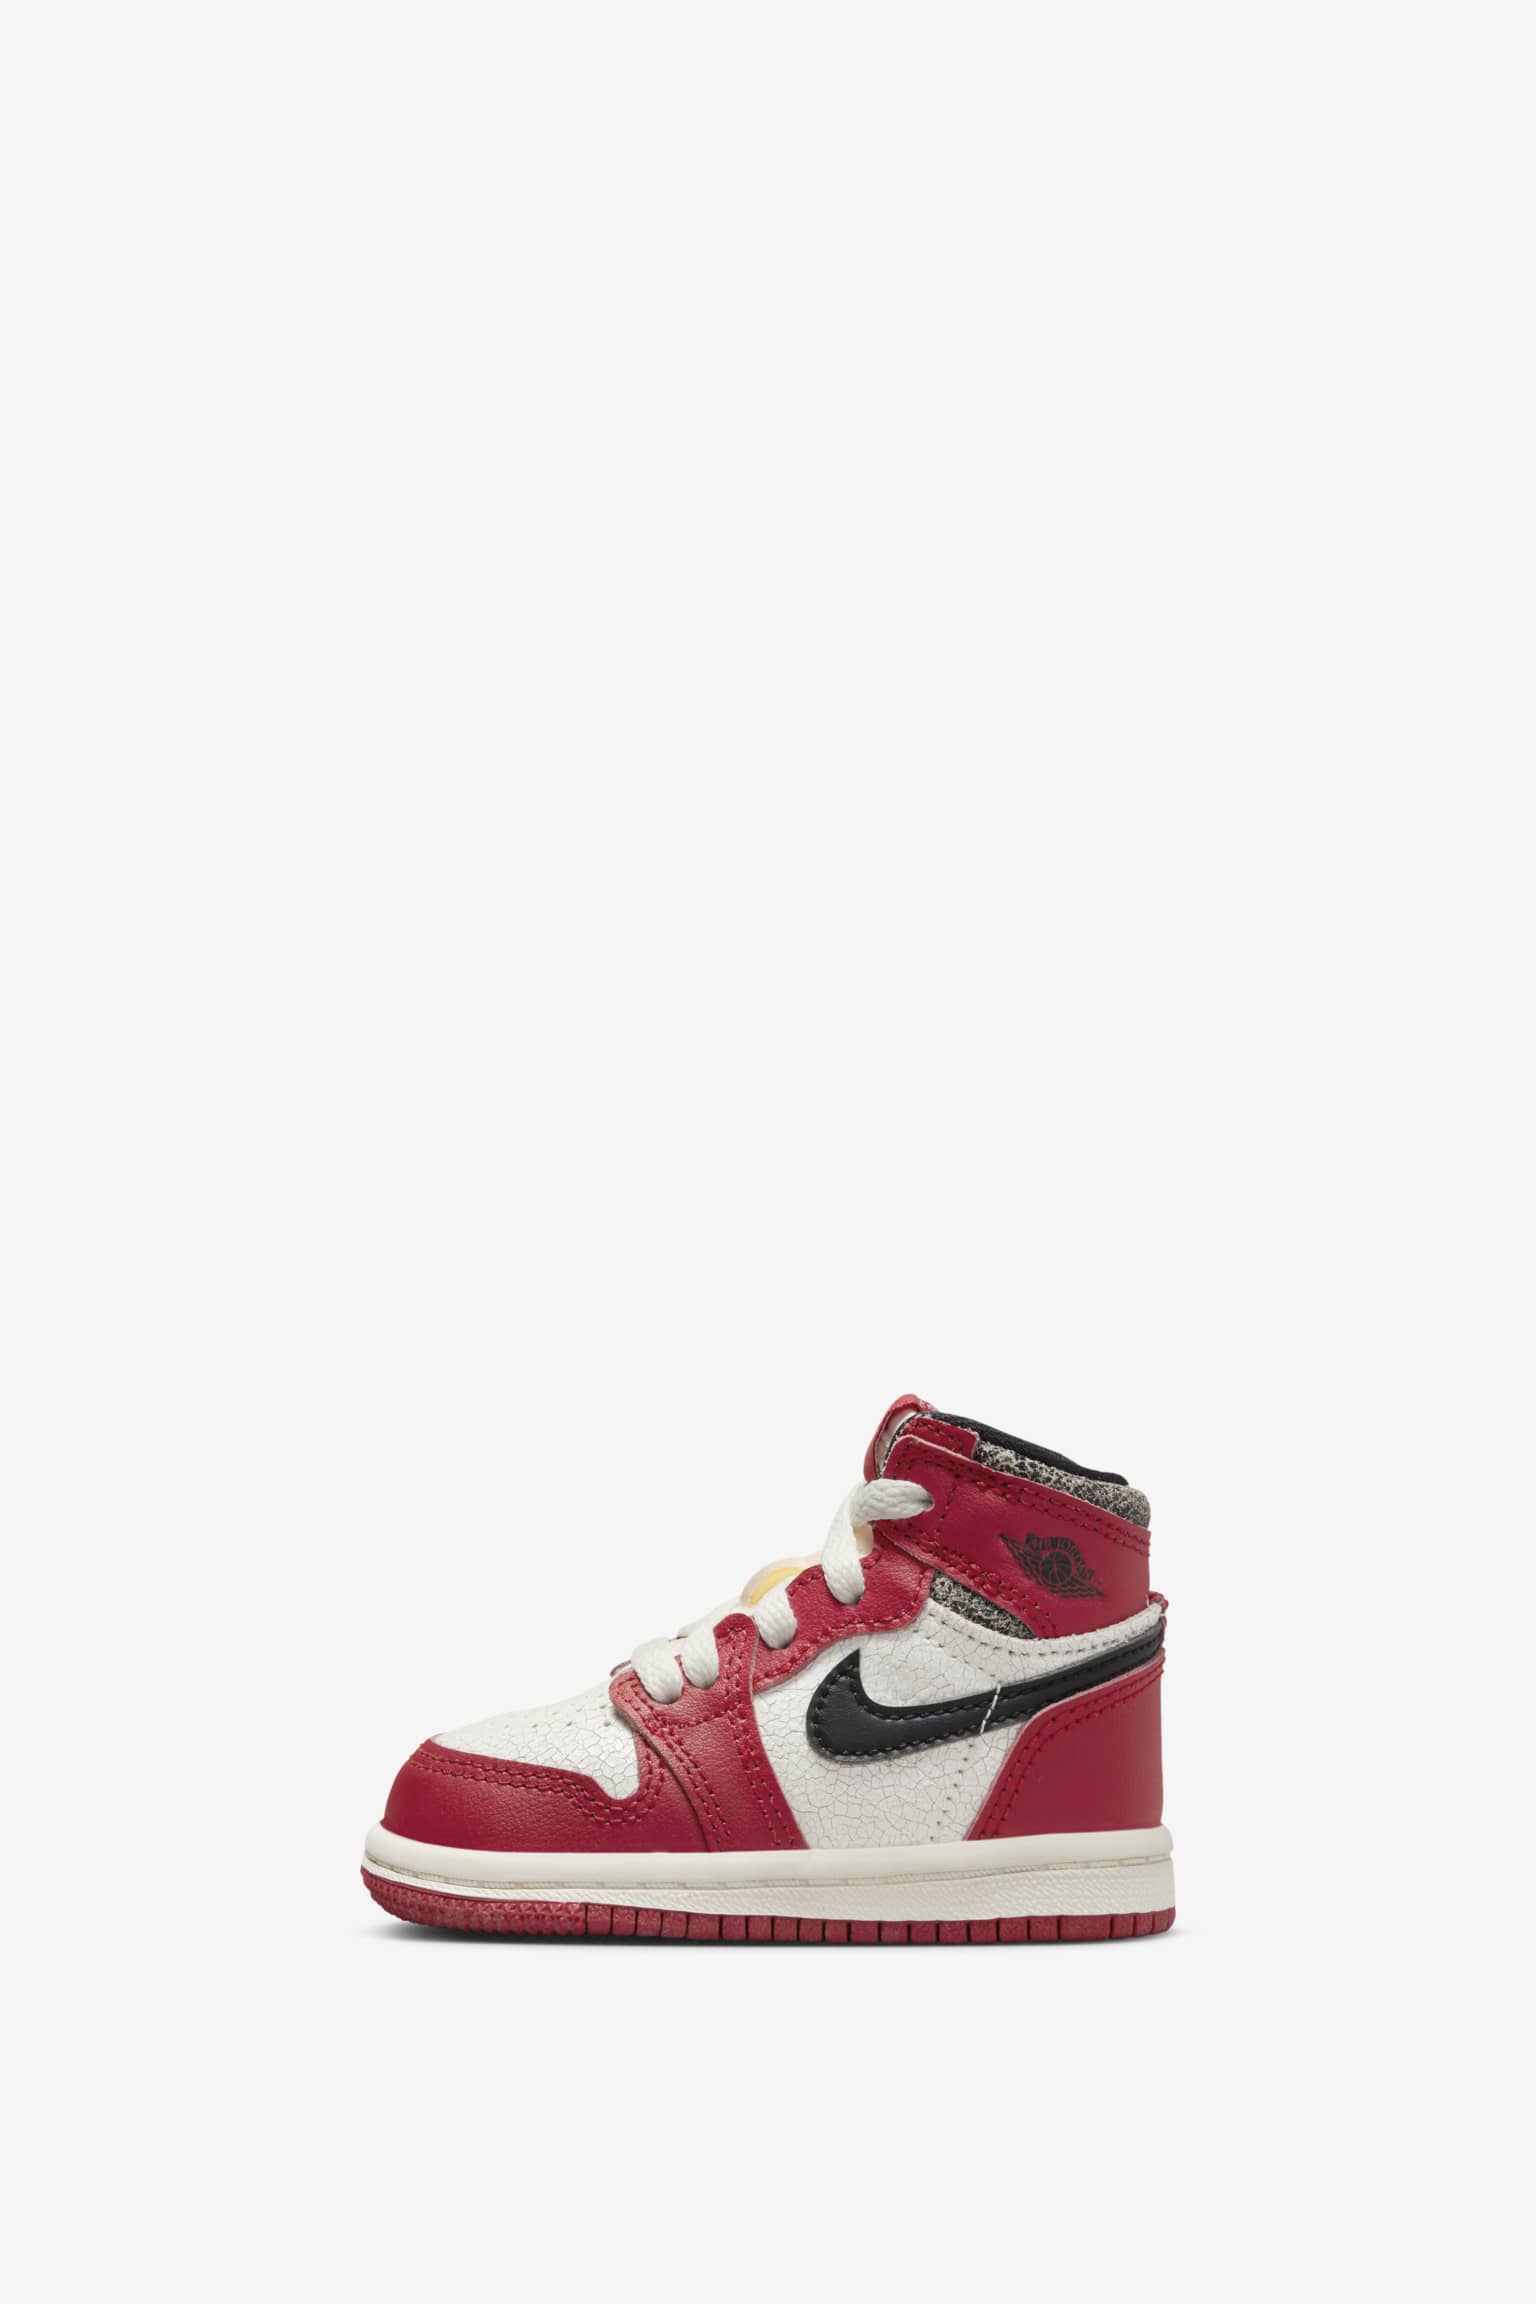 Fecha de lanzamiento de las Air Jordan 1 "Chicago" Nike SNKRS ES